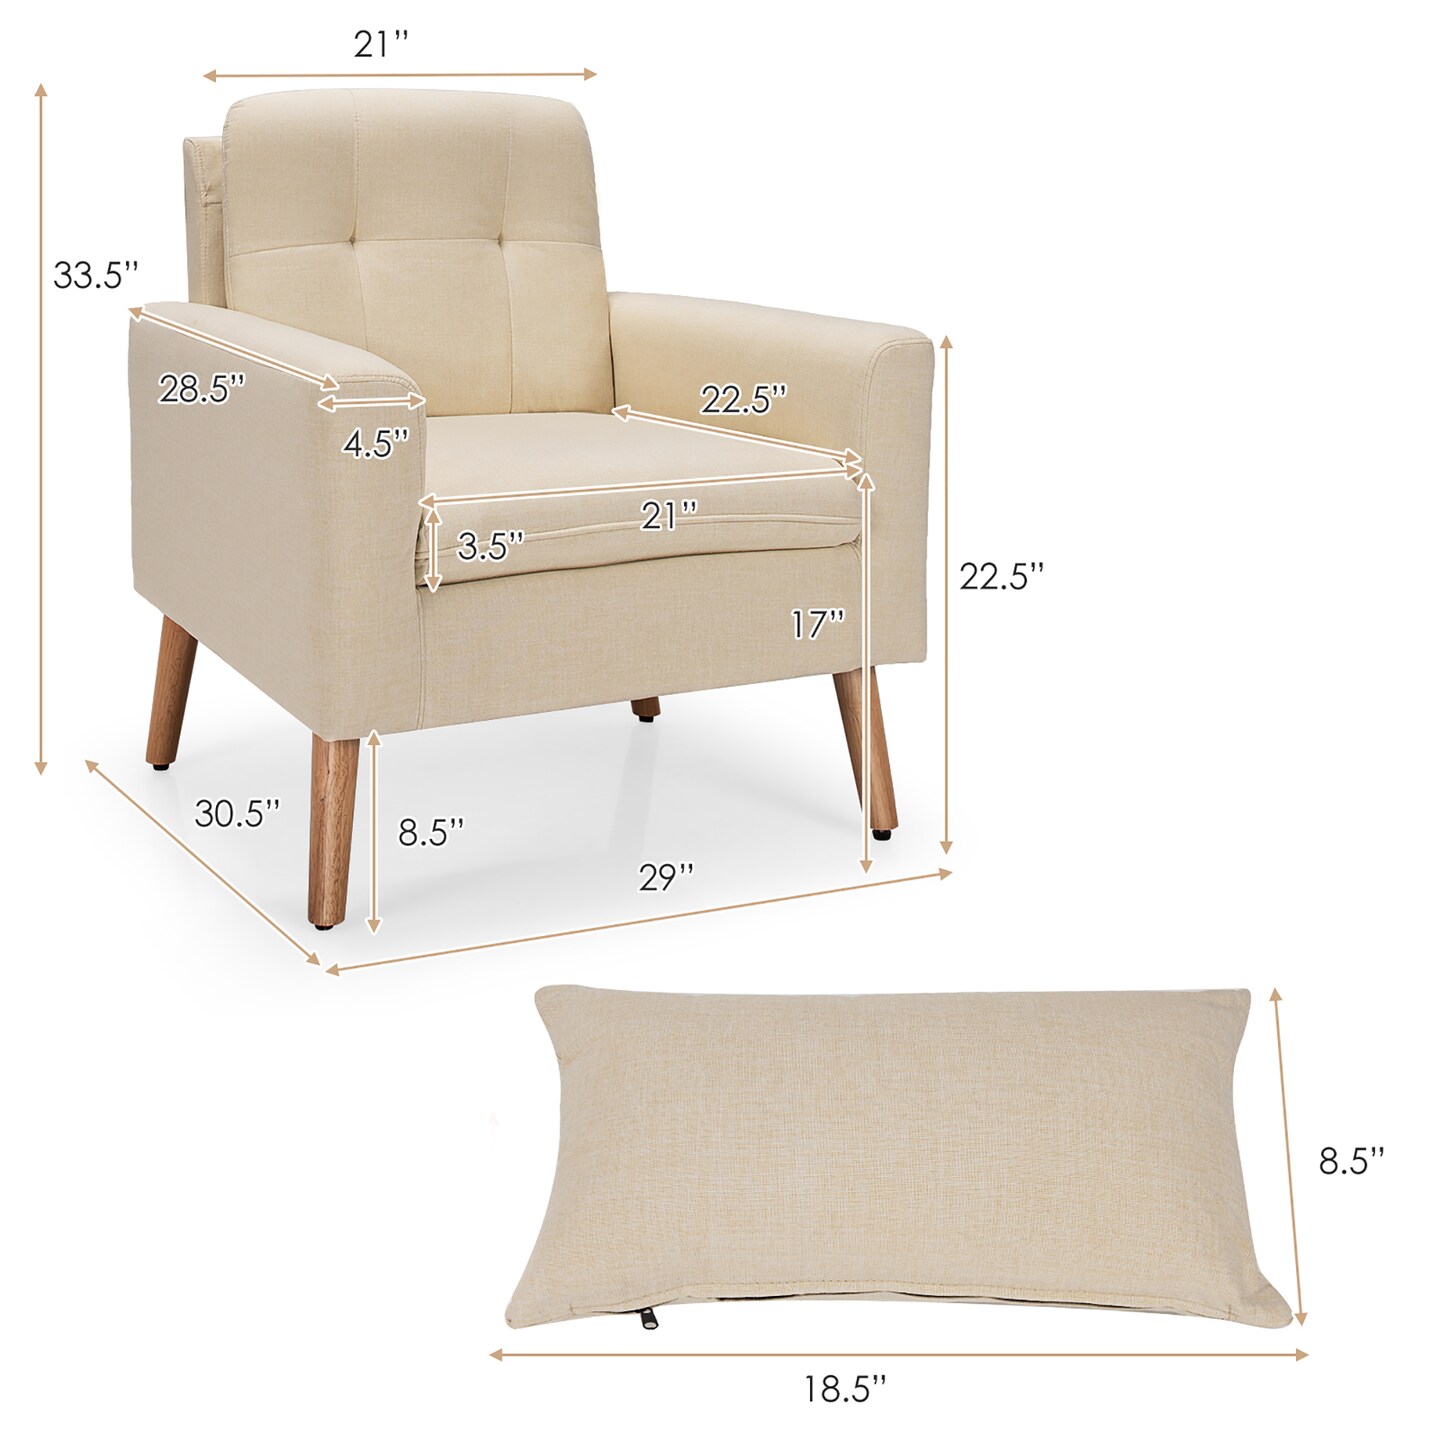 Costway Accent Chair Upholstered Linen Armchair Sofa Chair w/Waist Pillow